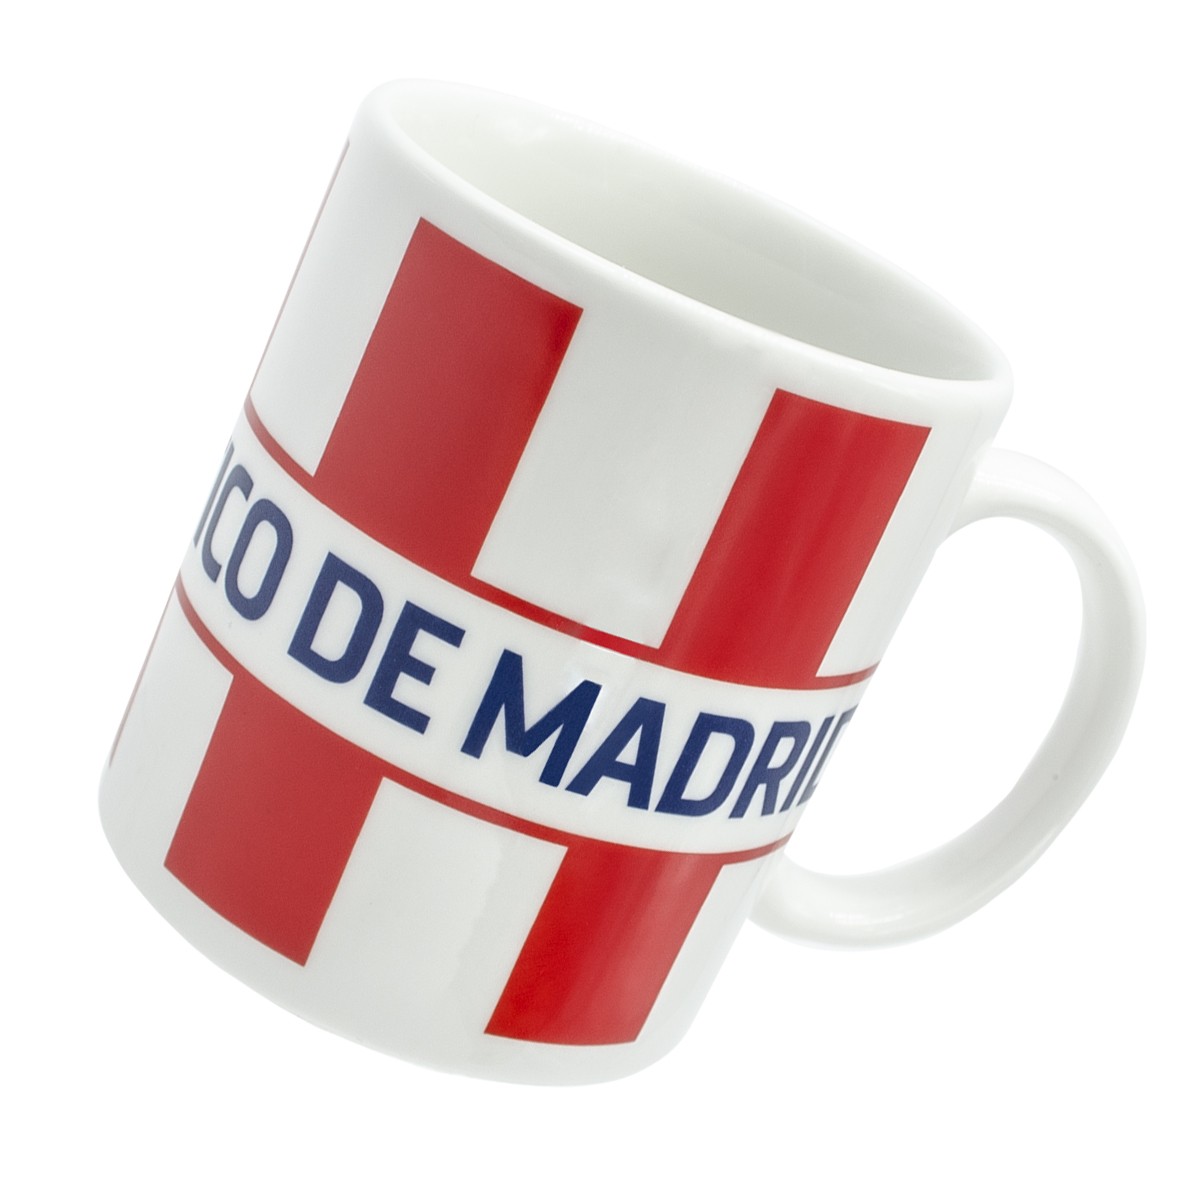  Taza de cerámica del Atlético de Madrid en caja